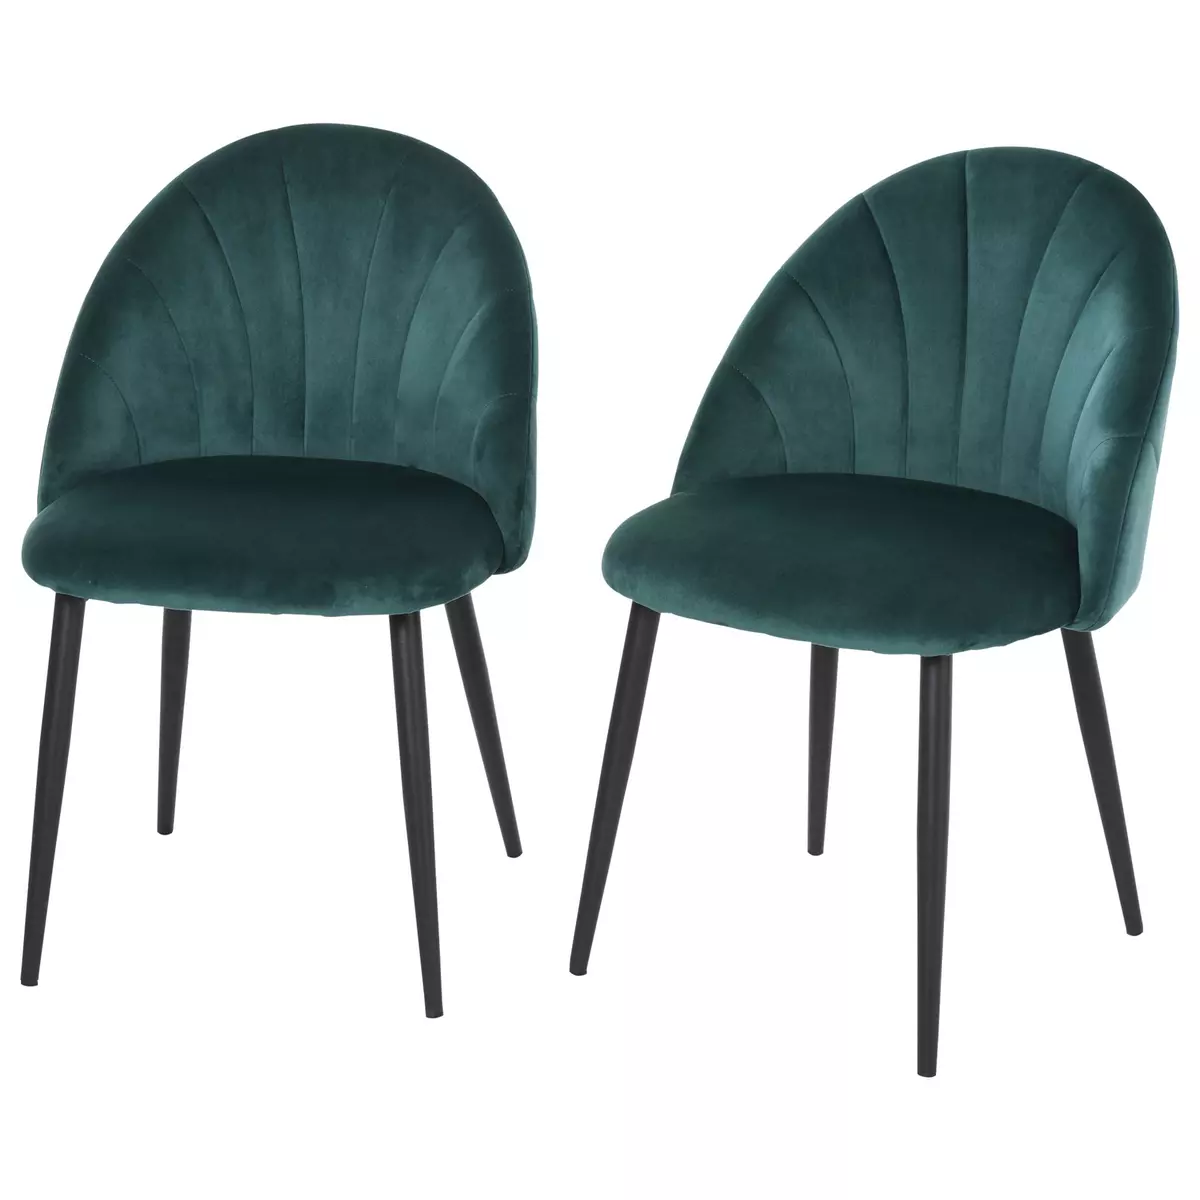 HOMCOM Lot de 2 chaises velours vert pieds métal noir dim. 52L x 54l x 79H cm